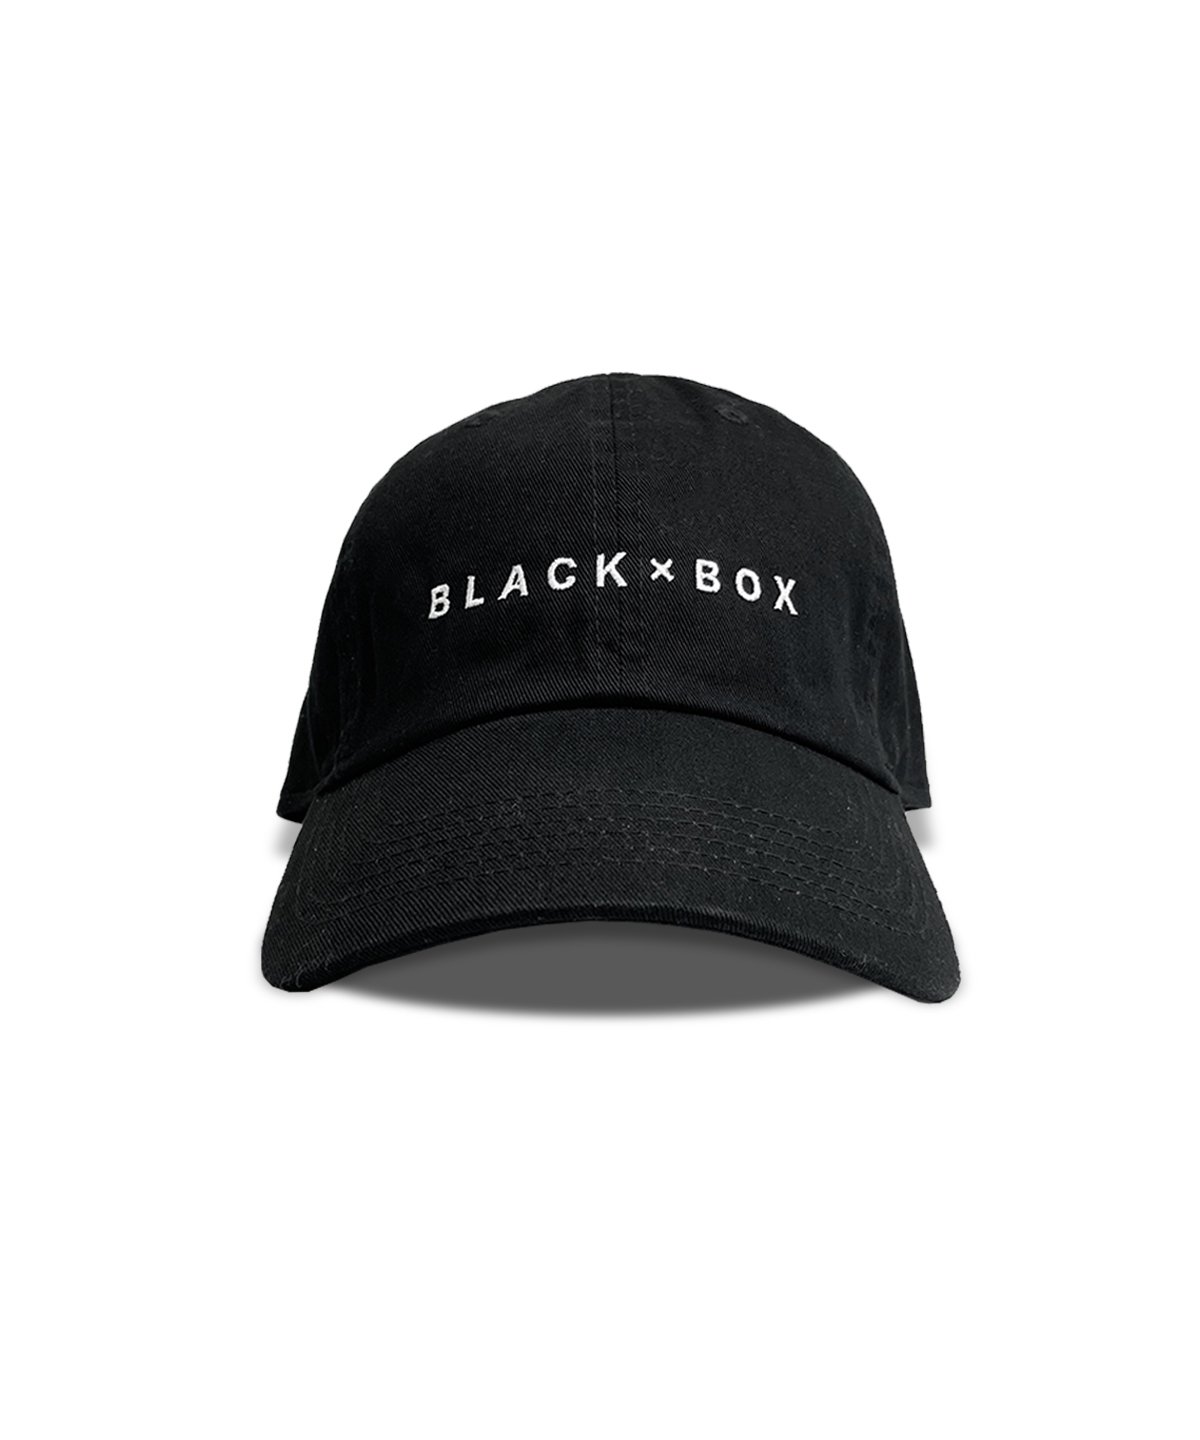 BLACK×BOX BLACK LOGO CAP WHT